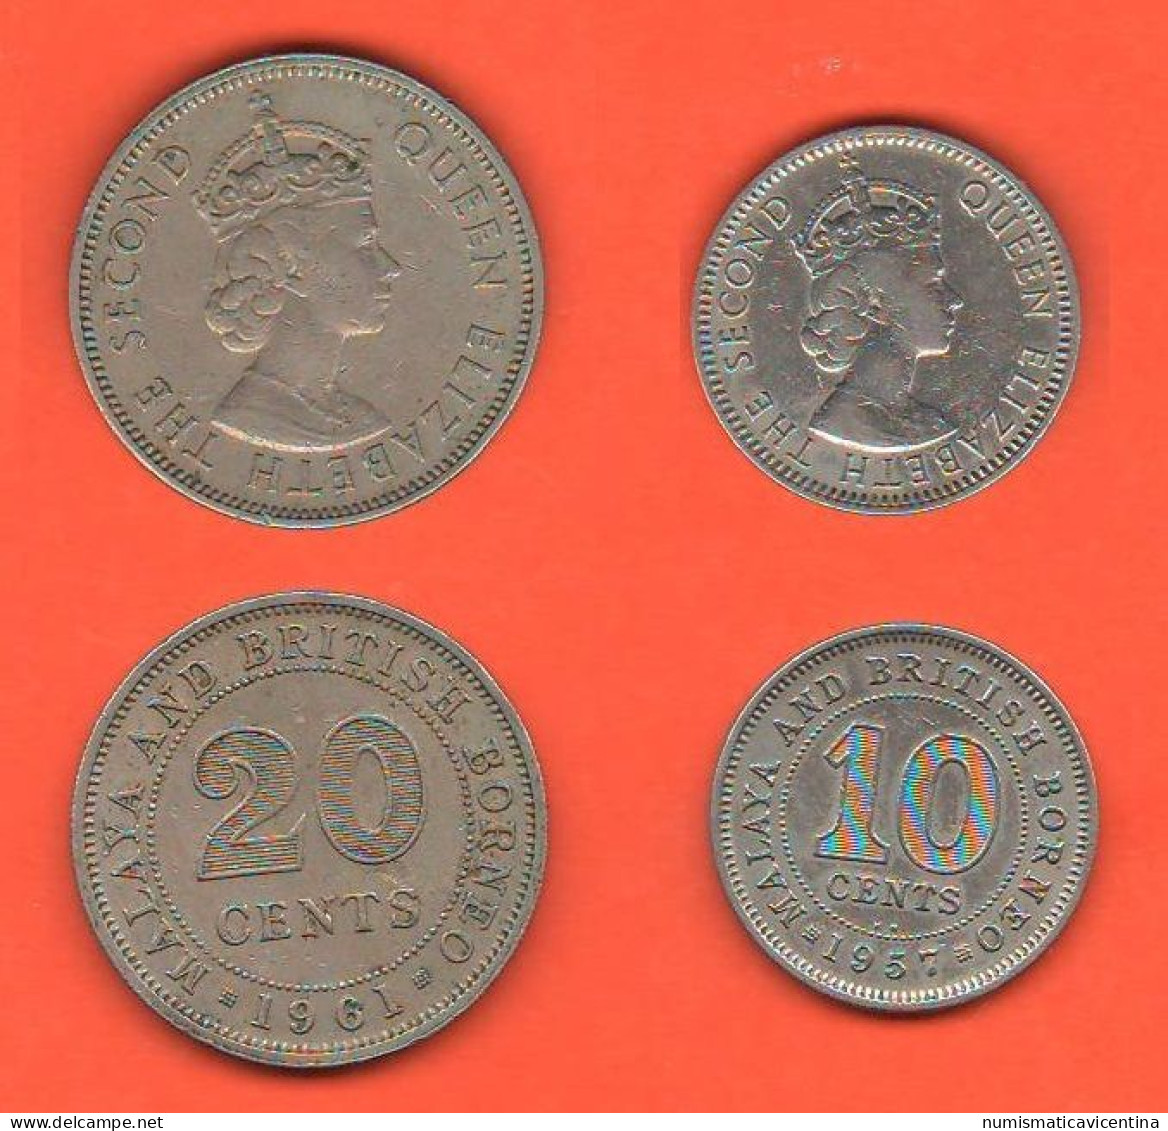 British Borneo 10 + 20 Cents 1957 E 1961 Borneo Britannico 10 + 20 Centesimi Nickel Coin Malesia Malaysia   C 7 - Kolonien